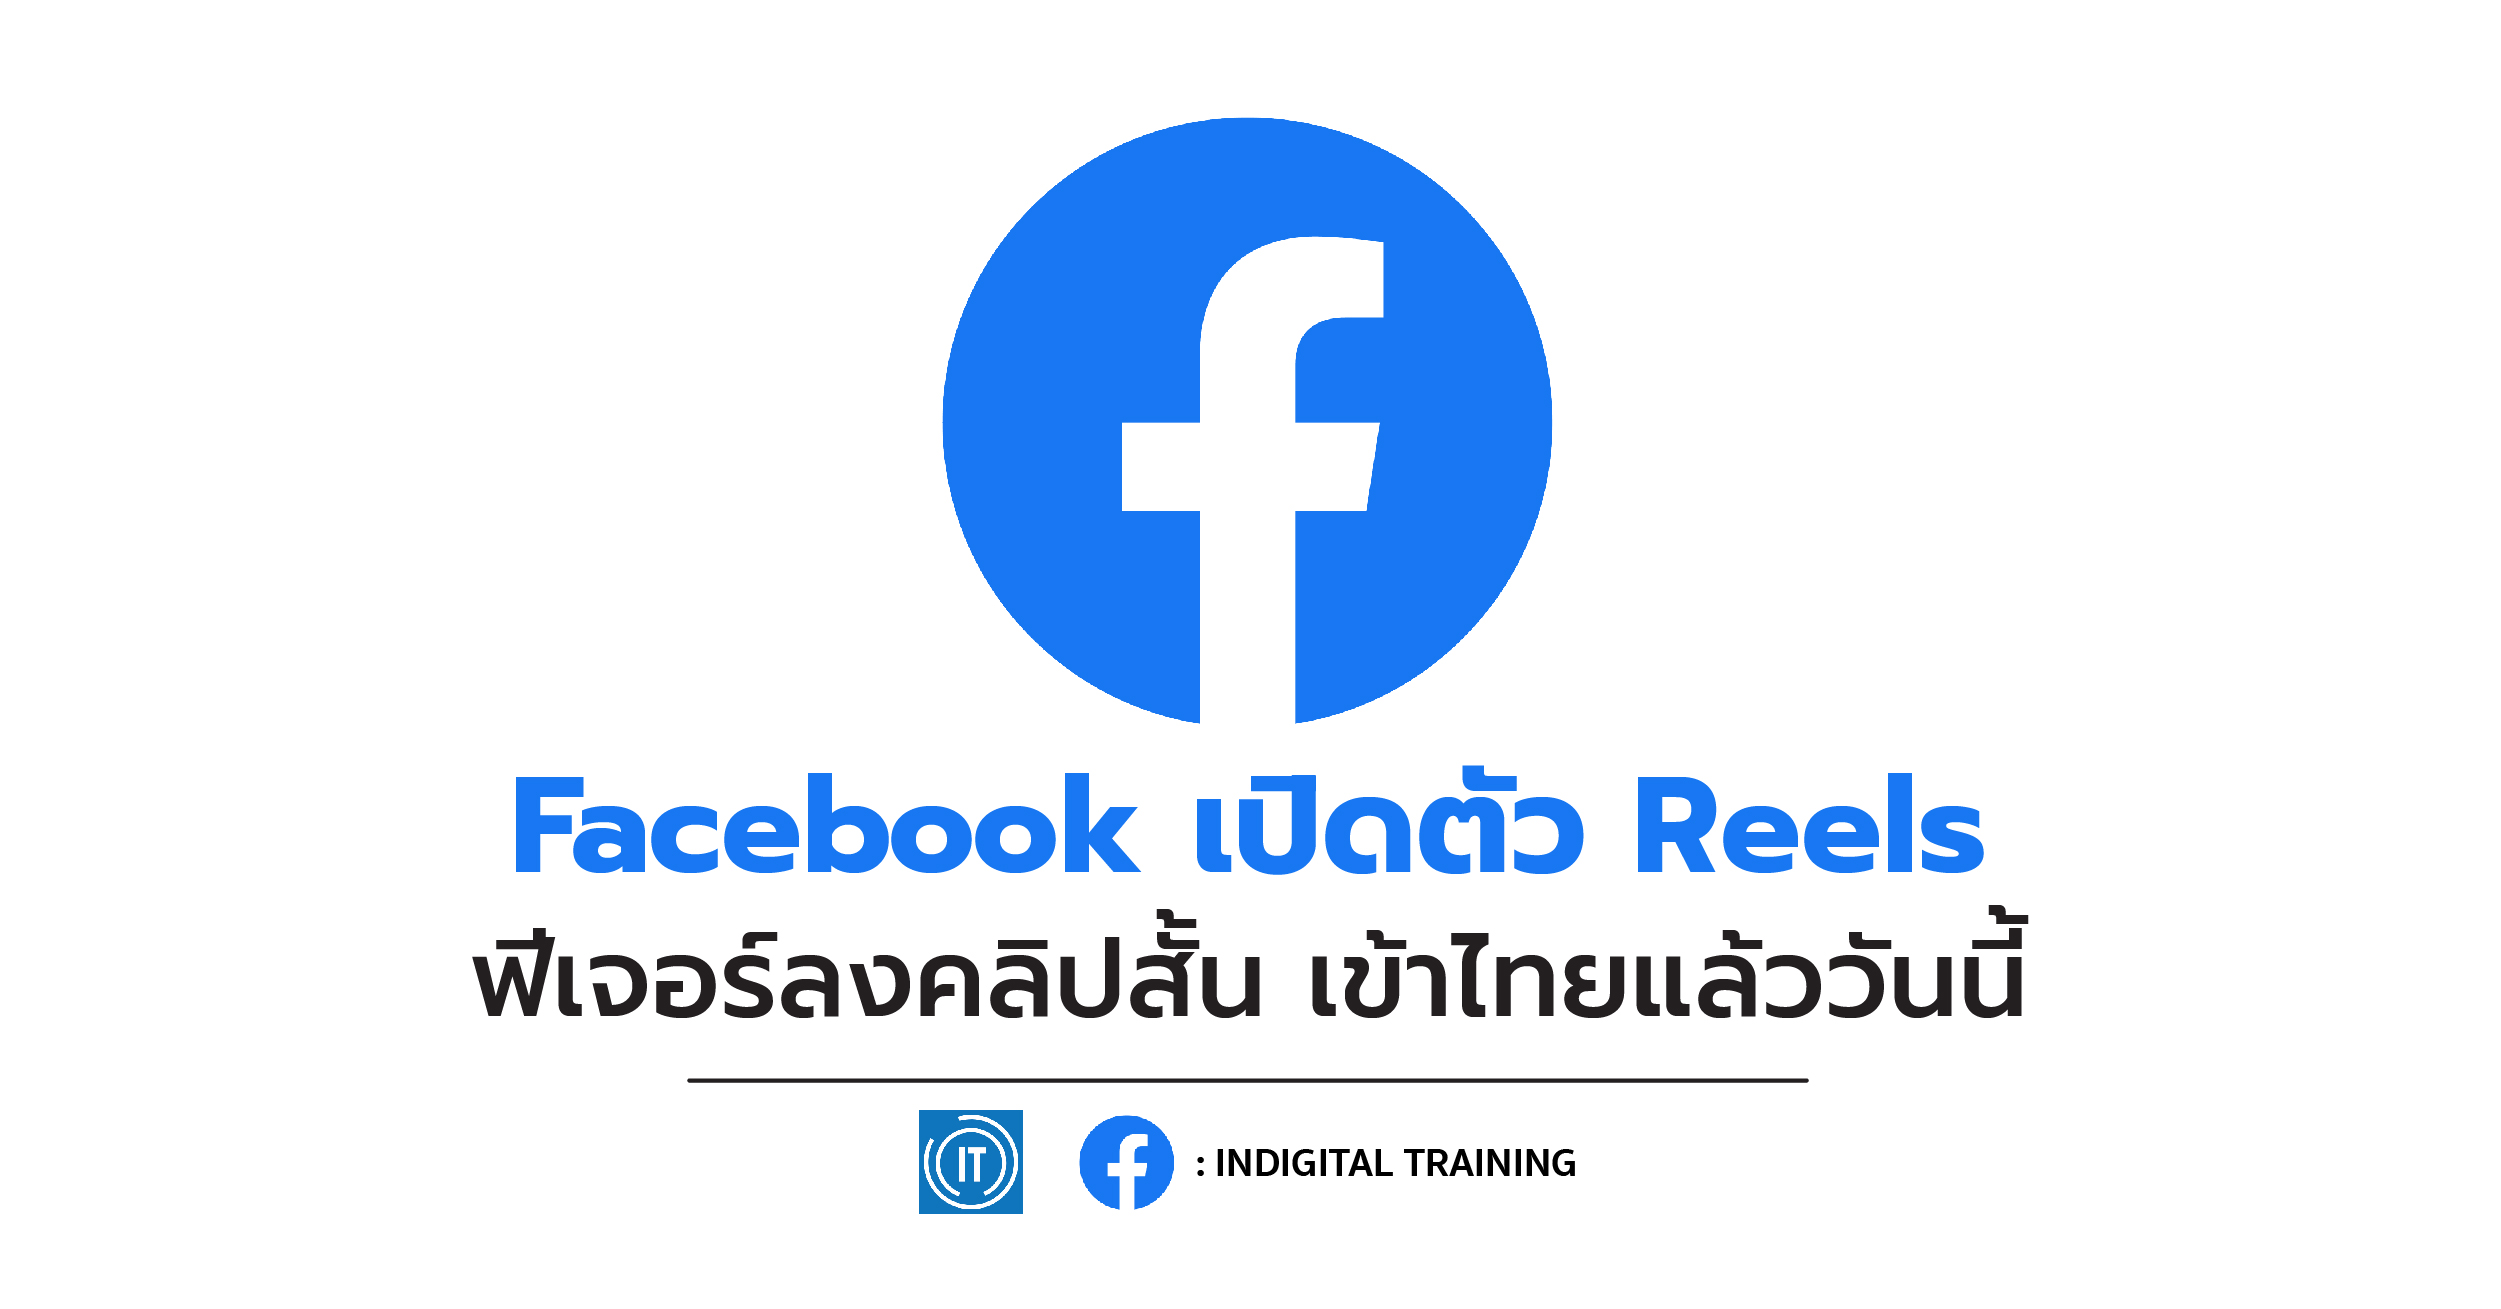 Facebook เปิดตัว Reels ฟีเจอร์ลงคลิปสั้น เข้าไทยแล้ววันนี้